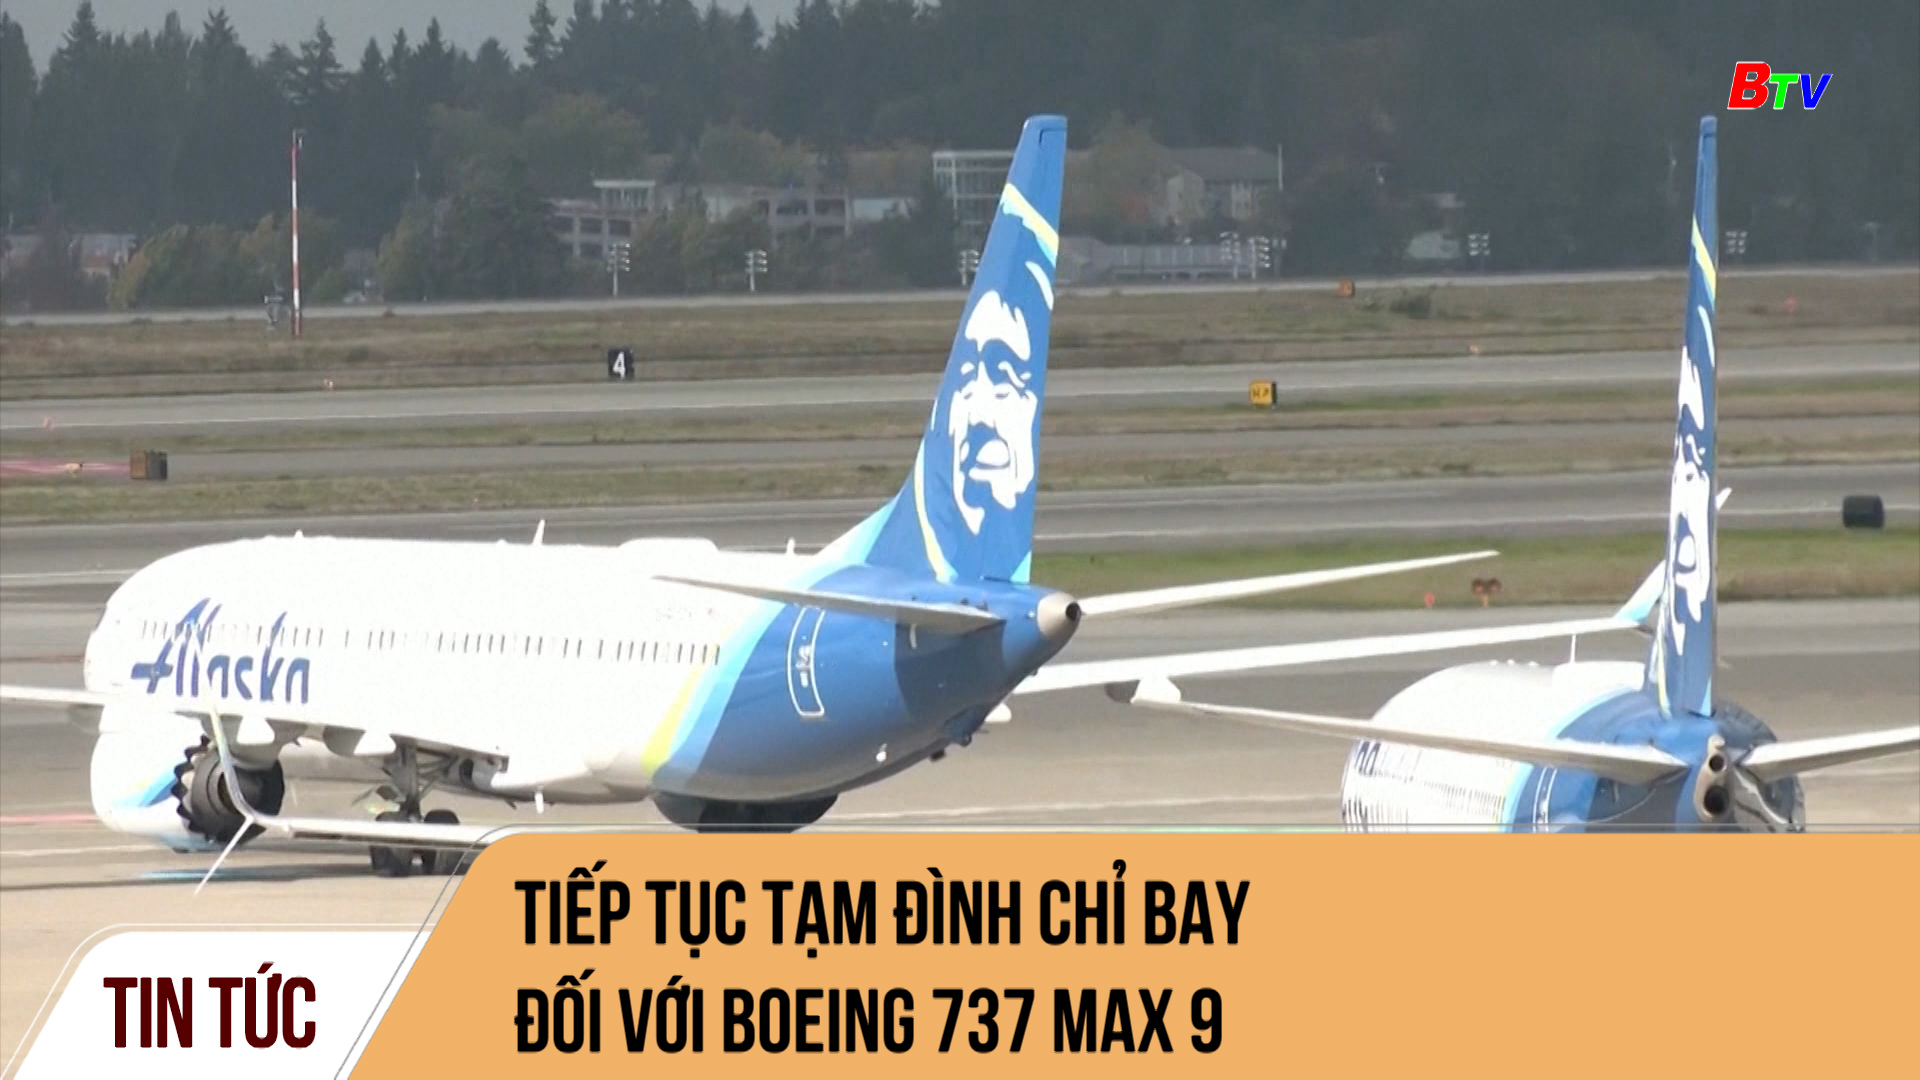 Tiếp tục tạm đình chỉ bay đối với Boeing 737 MAX 9